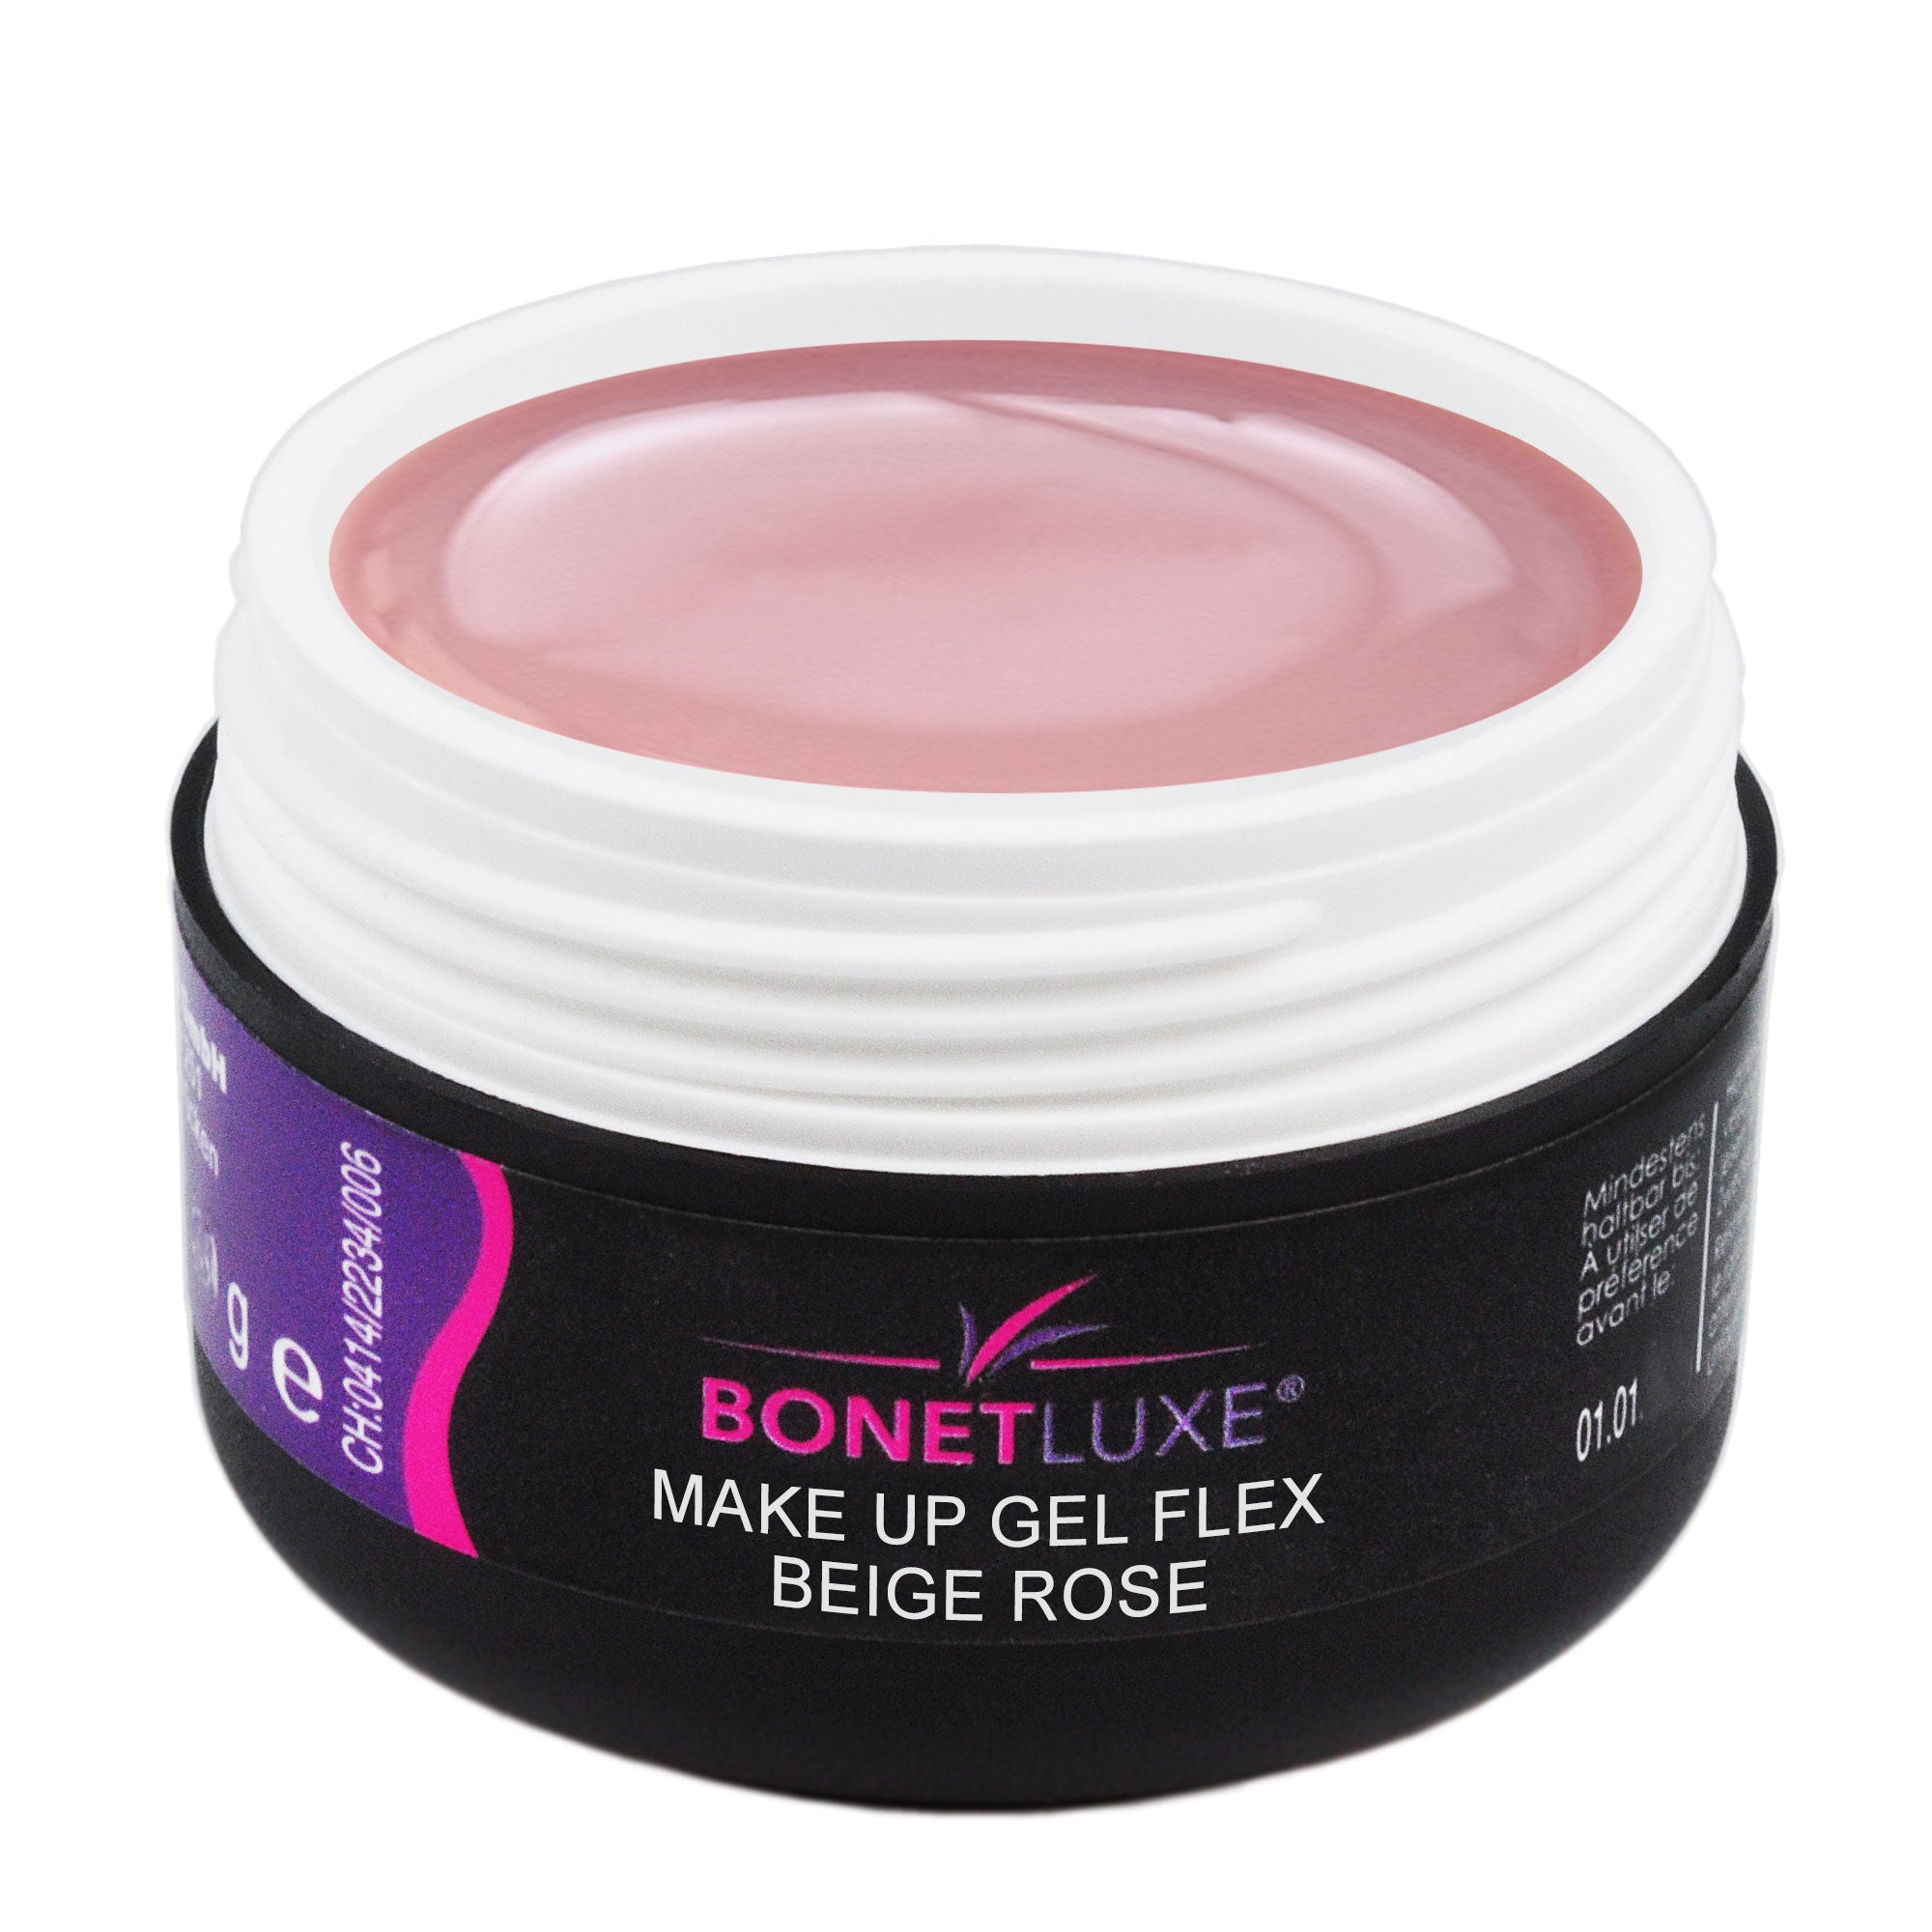 Make Up Gel Flex Beige Rose